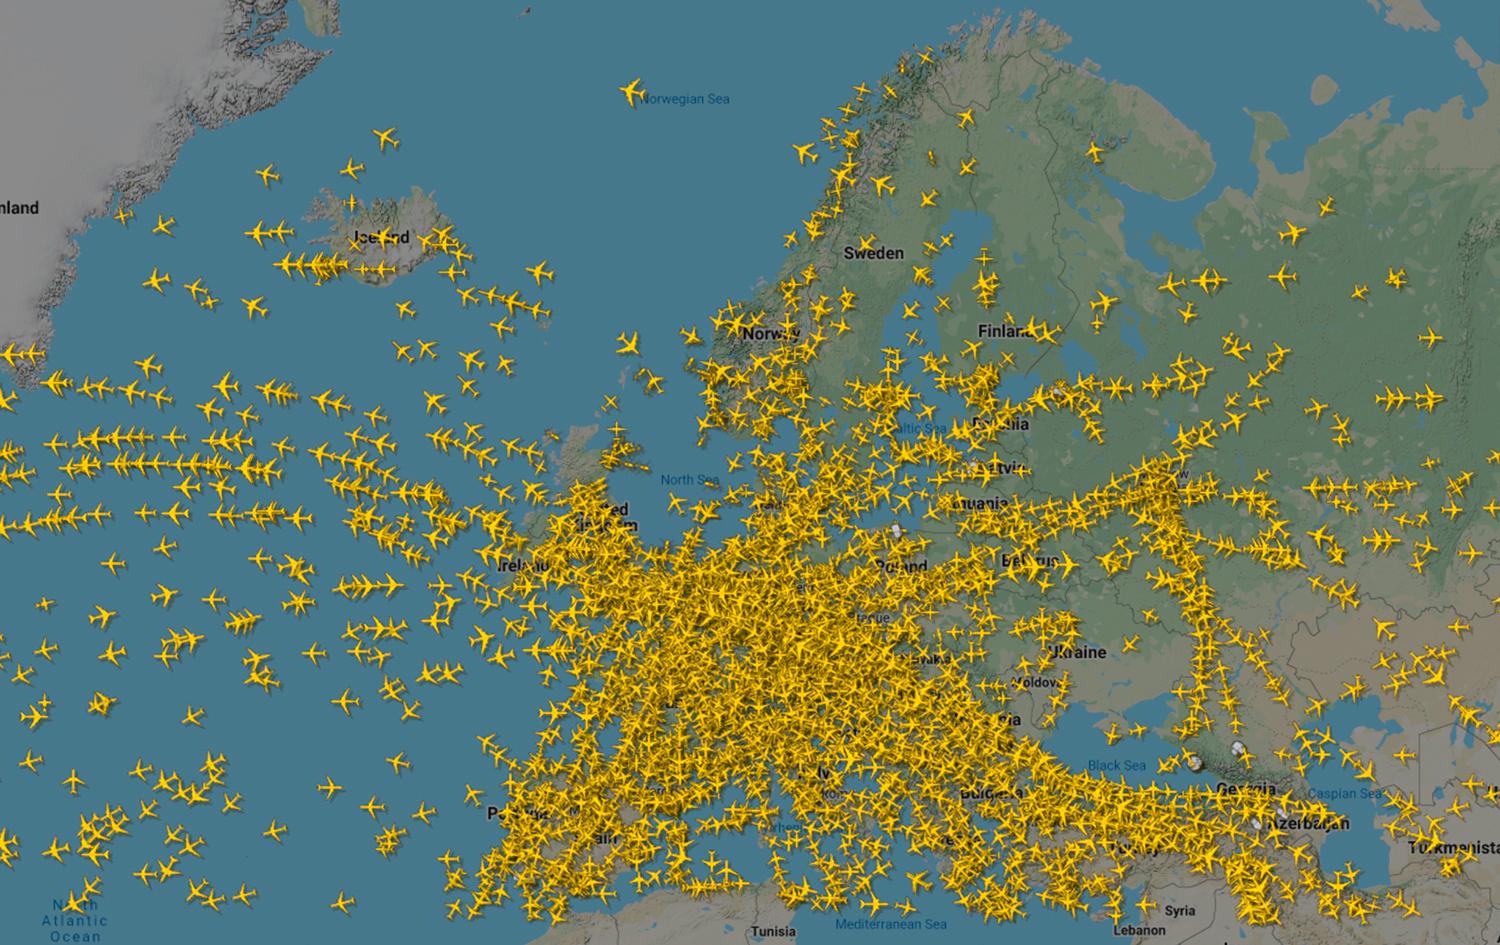 En översikt över flygtrafiken över Europa den 18 december 2019 från sajten Flightradar24.